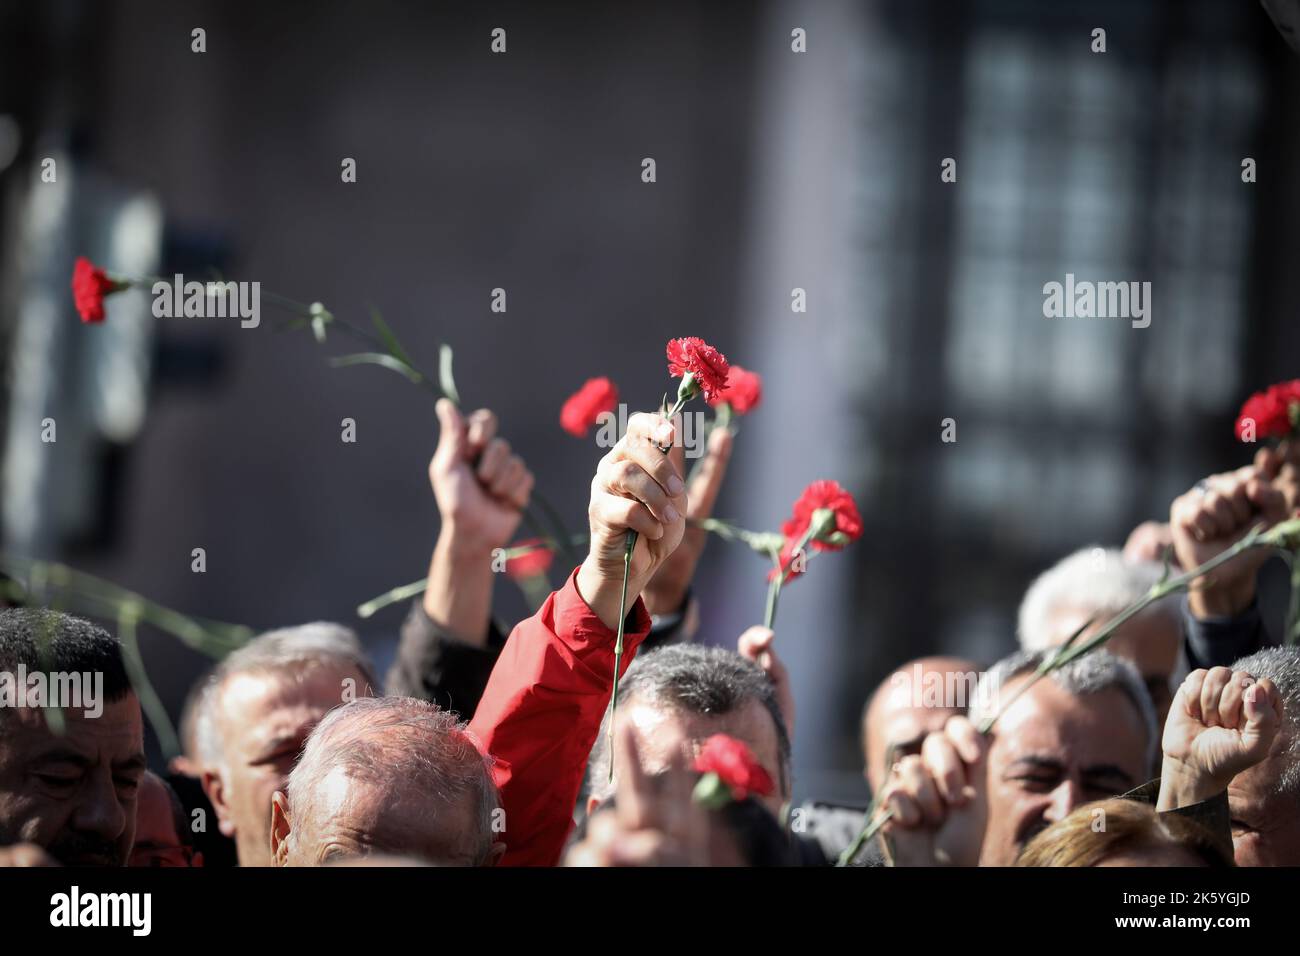 Les gens tiennent des œillets lors de la commémoration du septième anniversaire des attentats-suicides à la bombe de 2015, à Ankara. Septième anniversaire des attentats-suicides à deux lits, au cours desquels plus de 100 personnes ont été tuées (10 octobre 2015), à Ankara, sur 10 octobre 2020. Les kamikazes soupçonnés d'être liés à l'État islamique se sont fait exploser dans une foule de militants pro-kurdes pour la paix qui prévoient d'organiser un rassemblement devant la gare centrale d'Ankara, avec un nombre de morts de 103 personnes. L'attaque l'attaque terroriste la plus meurtrière de l'histoire turque. Dans la septième année du massacre, ceux qui ont perdu leurs parents an Banque D'Images